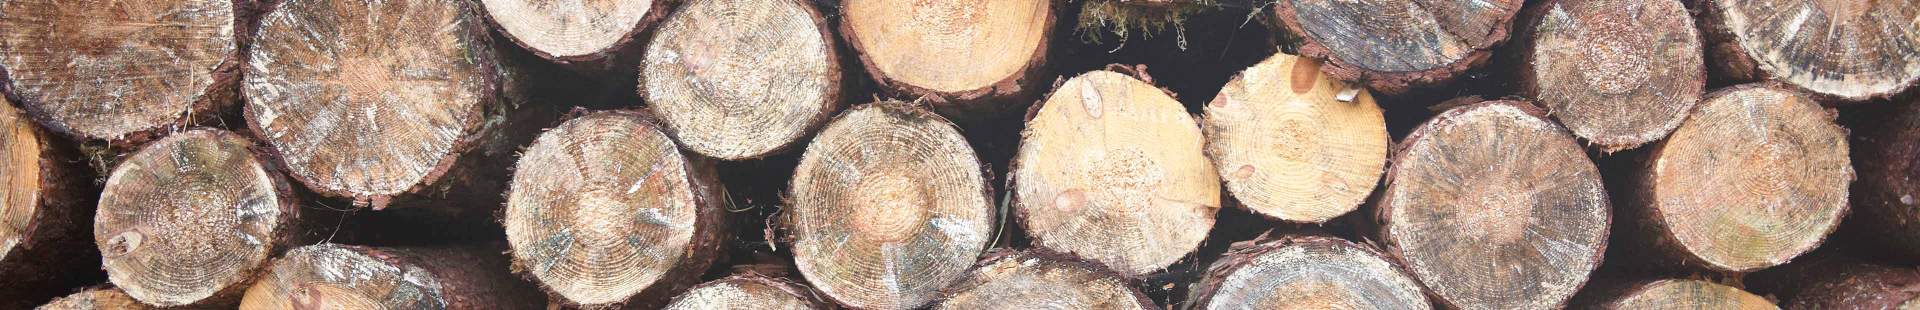 VRK Daten und Fakten – Ein Stapel gefällter Baumstämme aufgeschichtet im Wald.